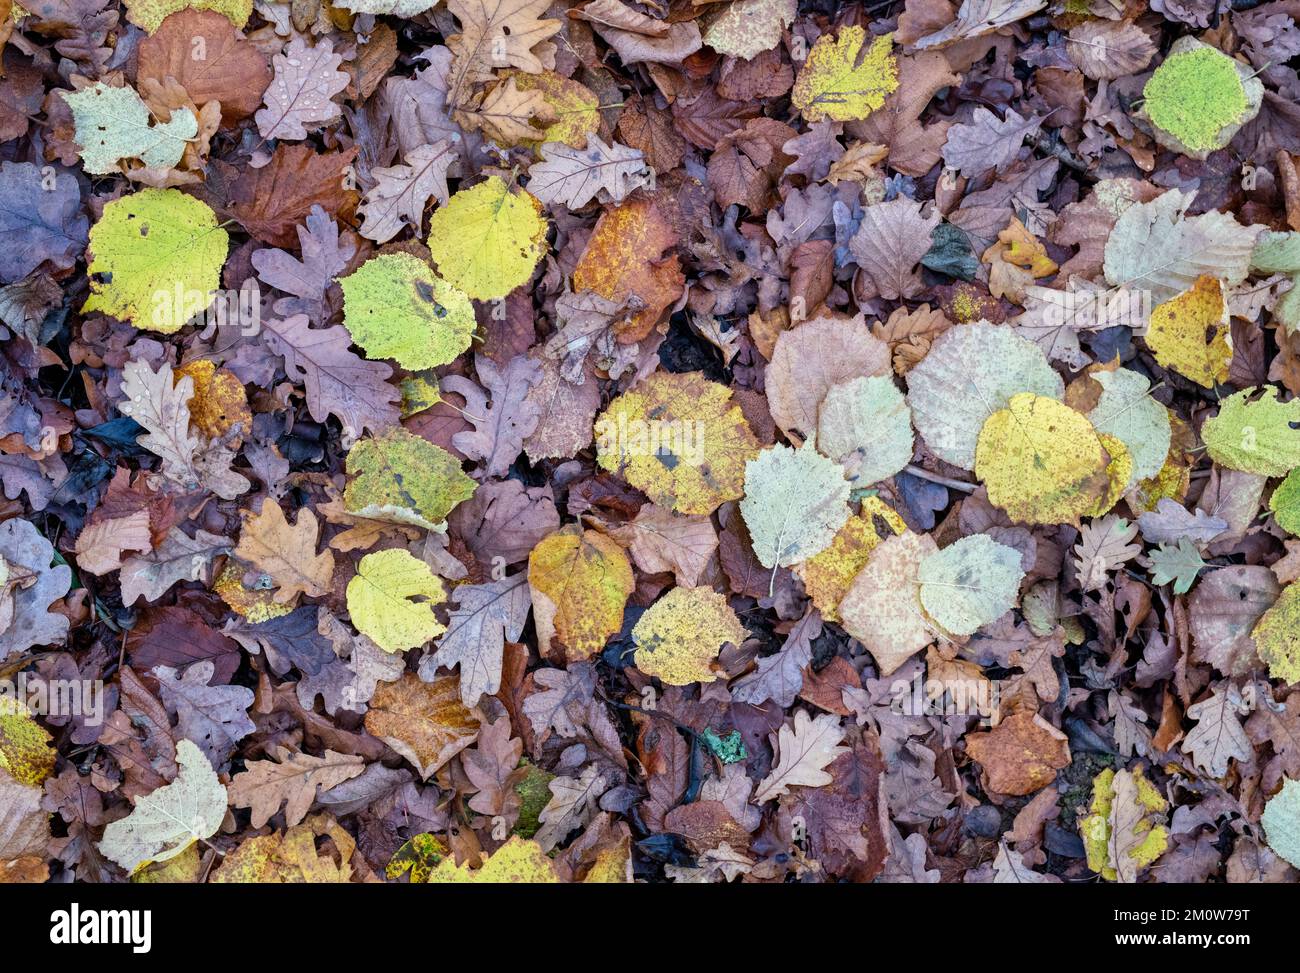 Fallen beech and oak leaves in december pattern Stock Photo